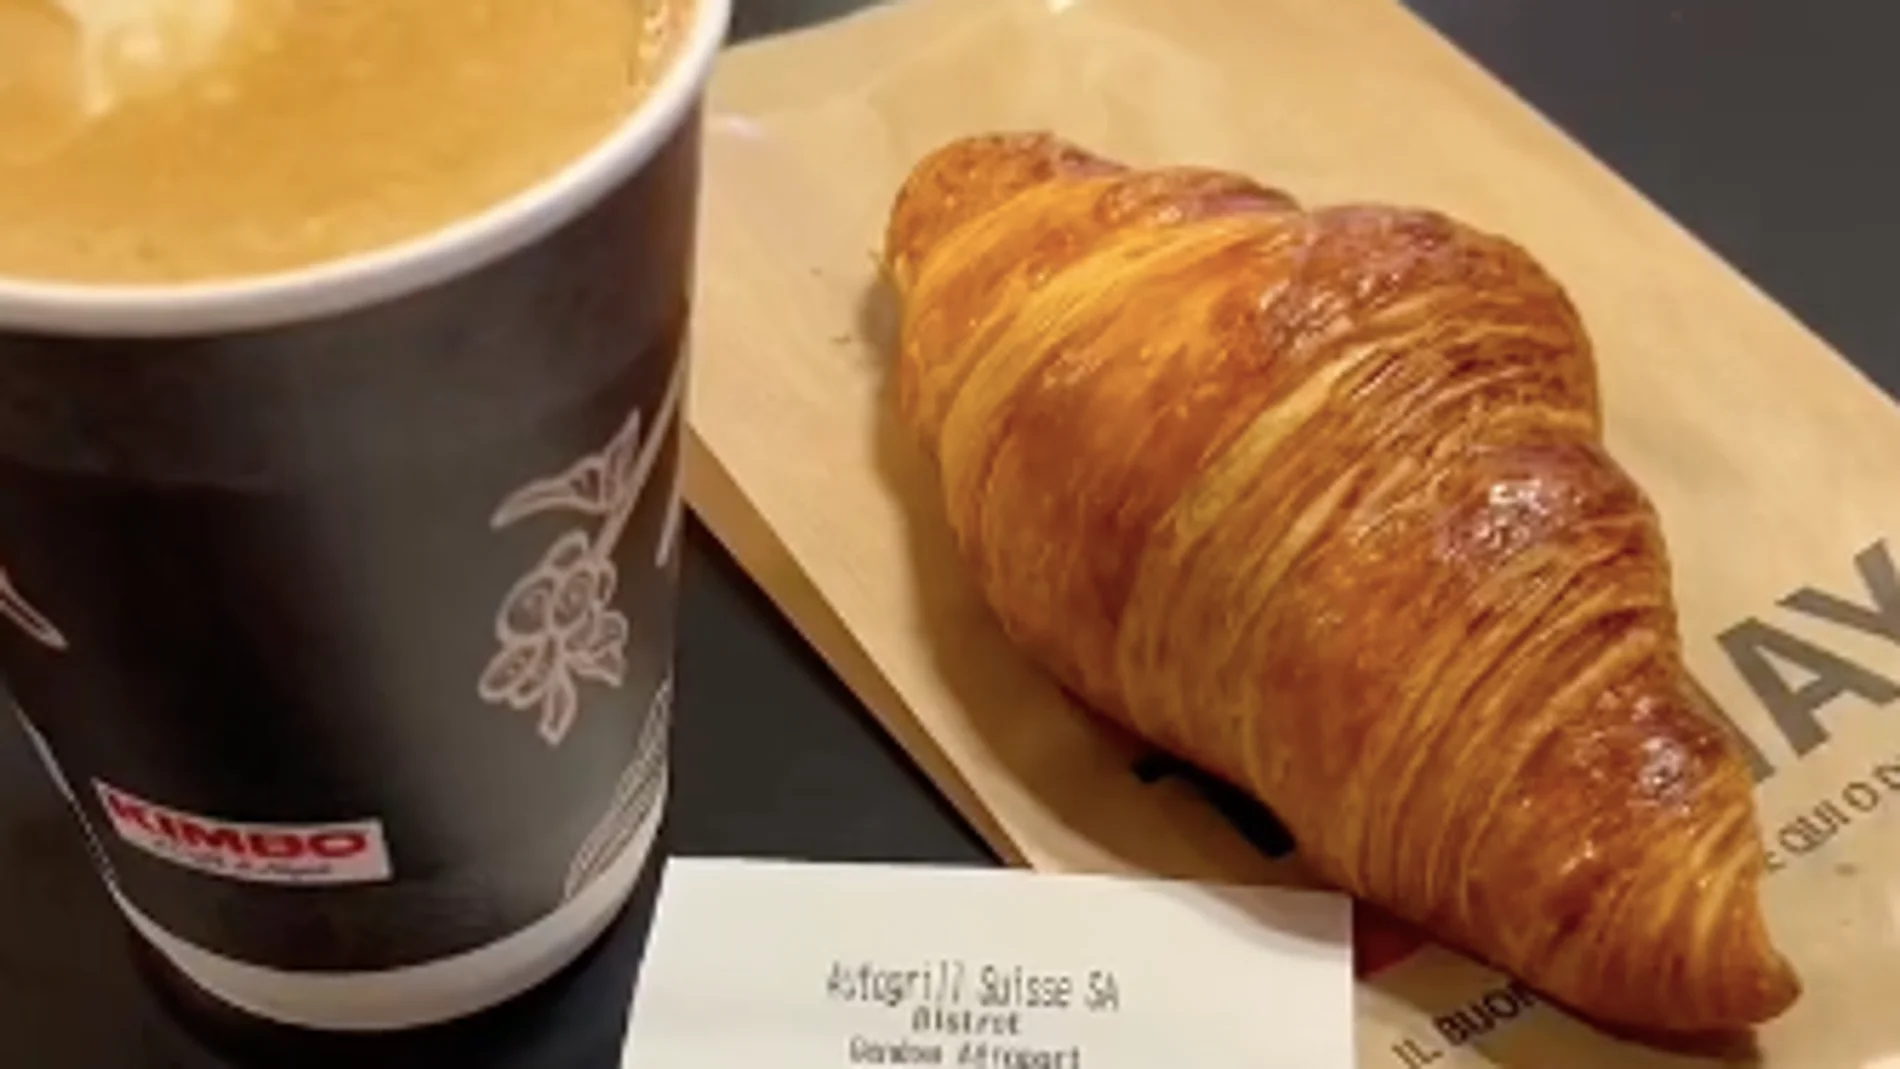 Una española muestra los desorbitados precios de un desayuno en un aeropuerto de Suiza